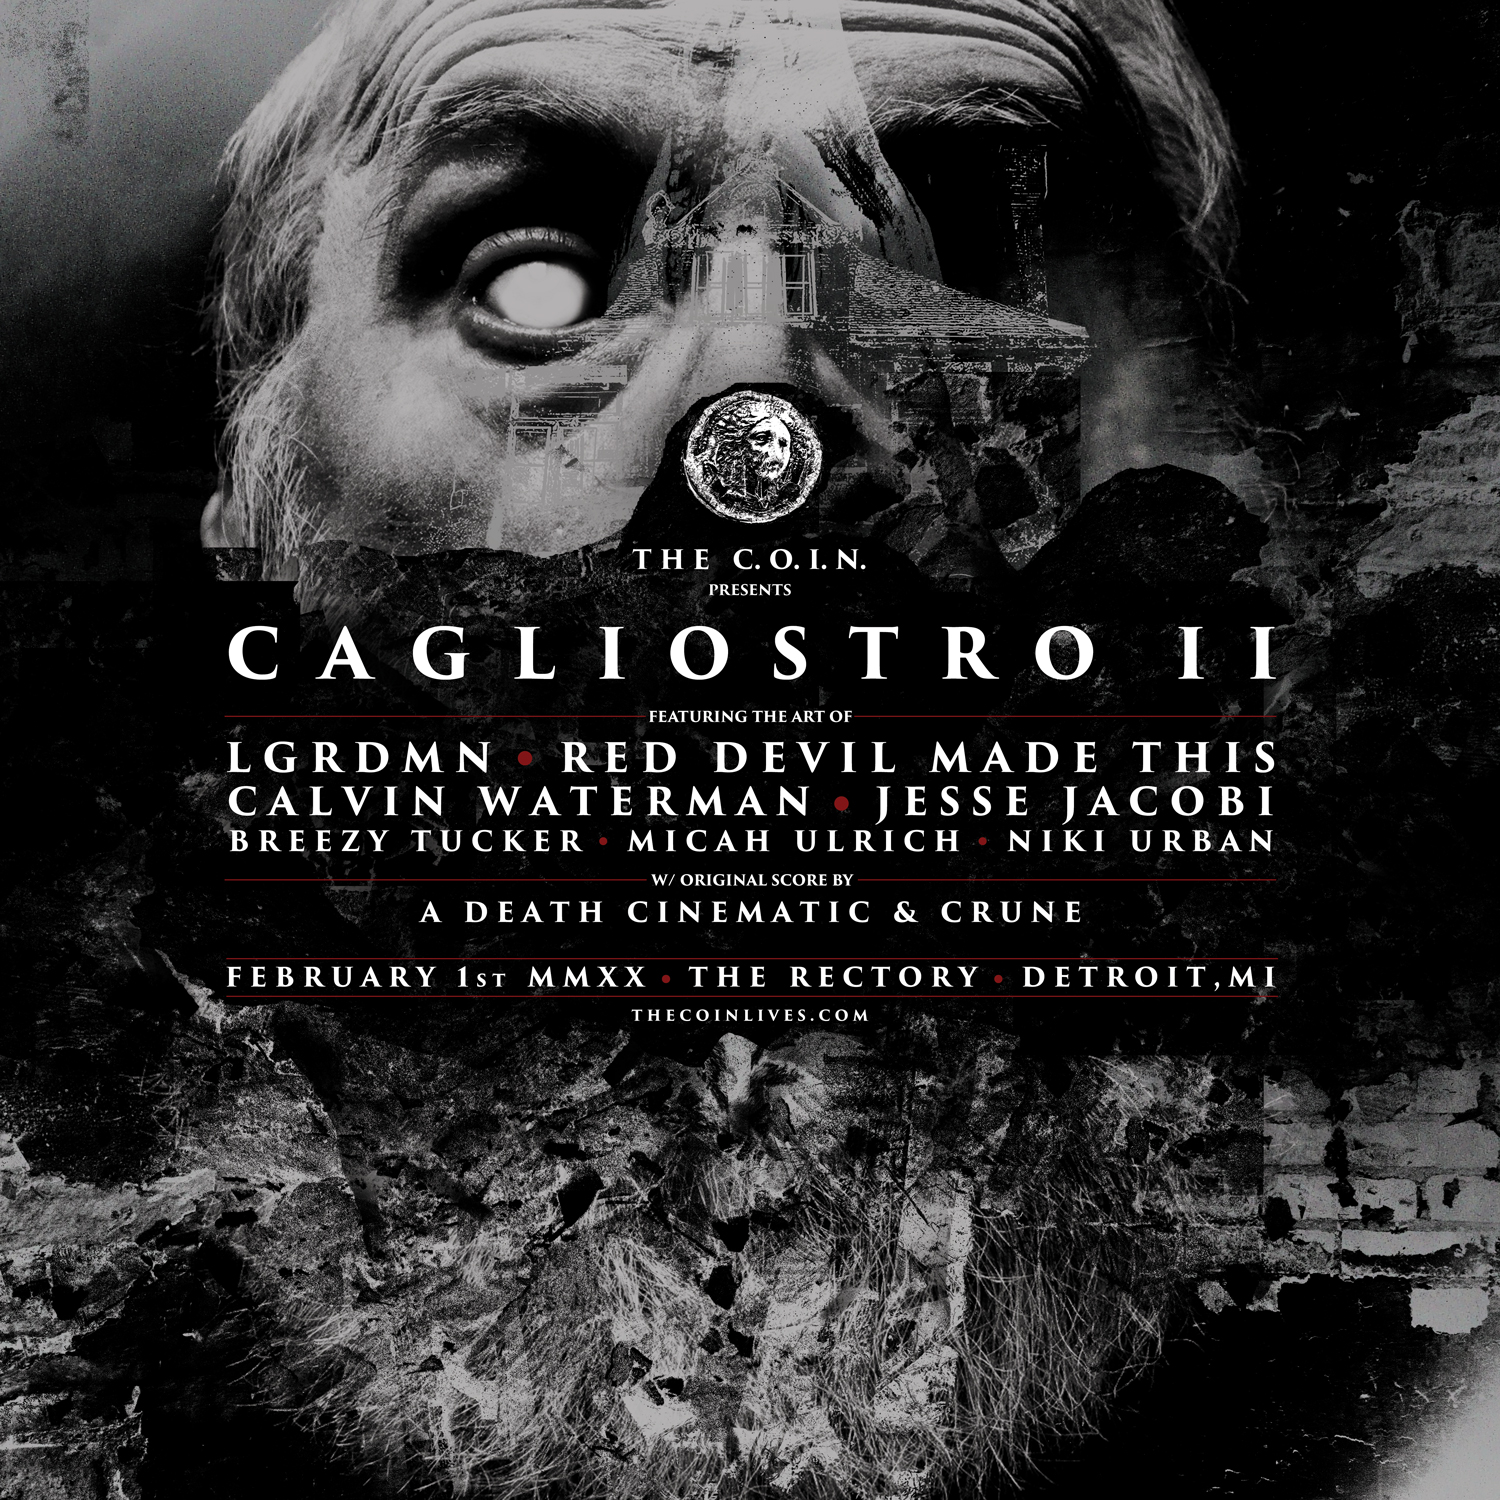 CAGLIOSTRO II